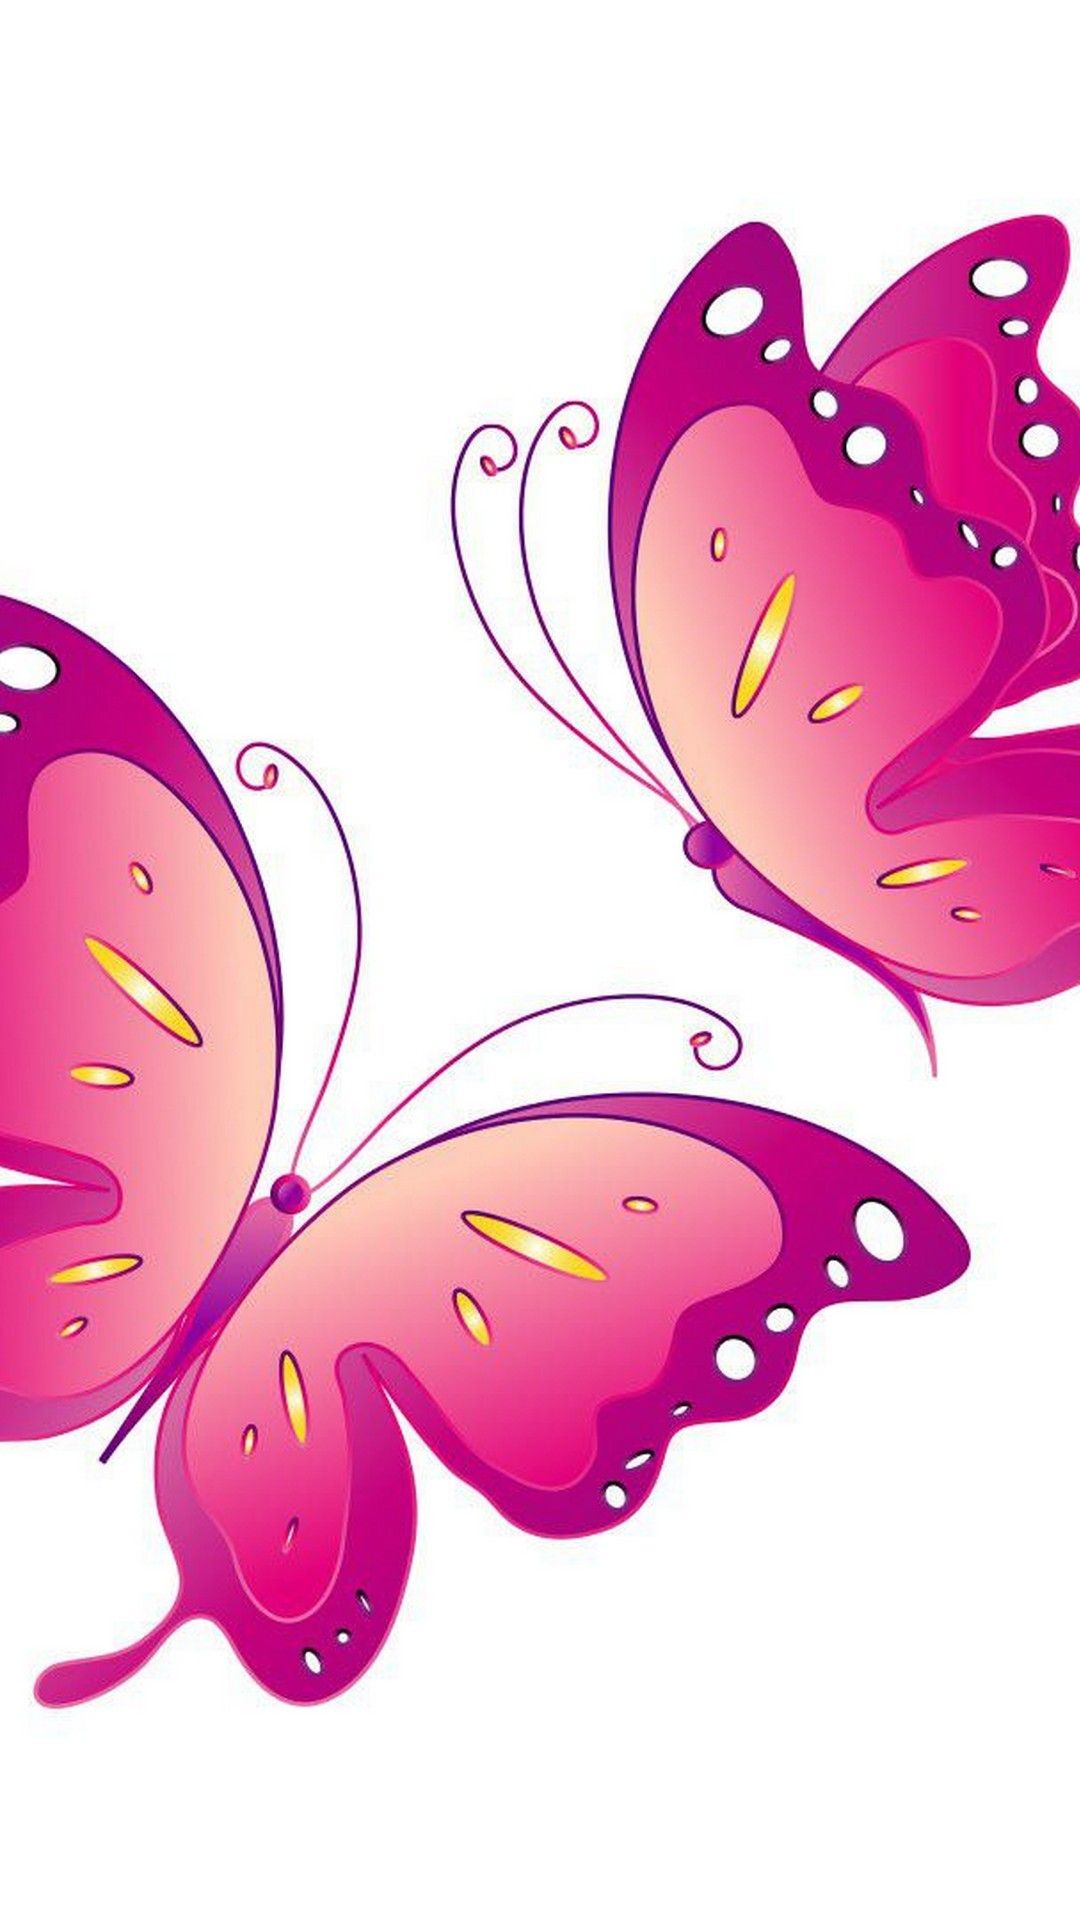 Pink Butterfly iPhone Wallpaper HD .wallpapercute.com